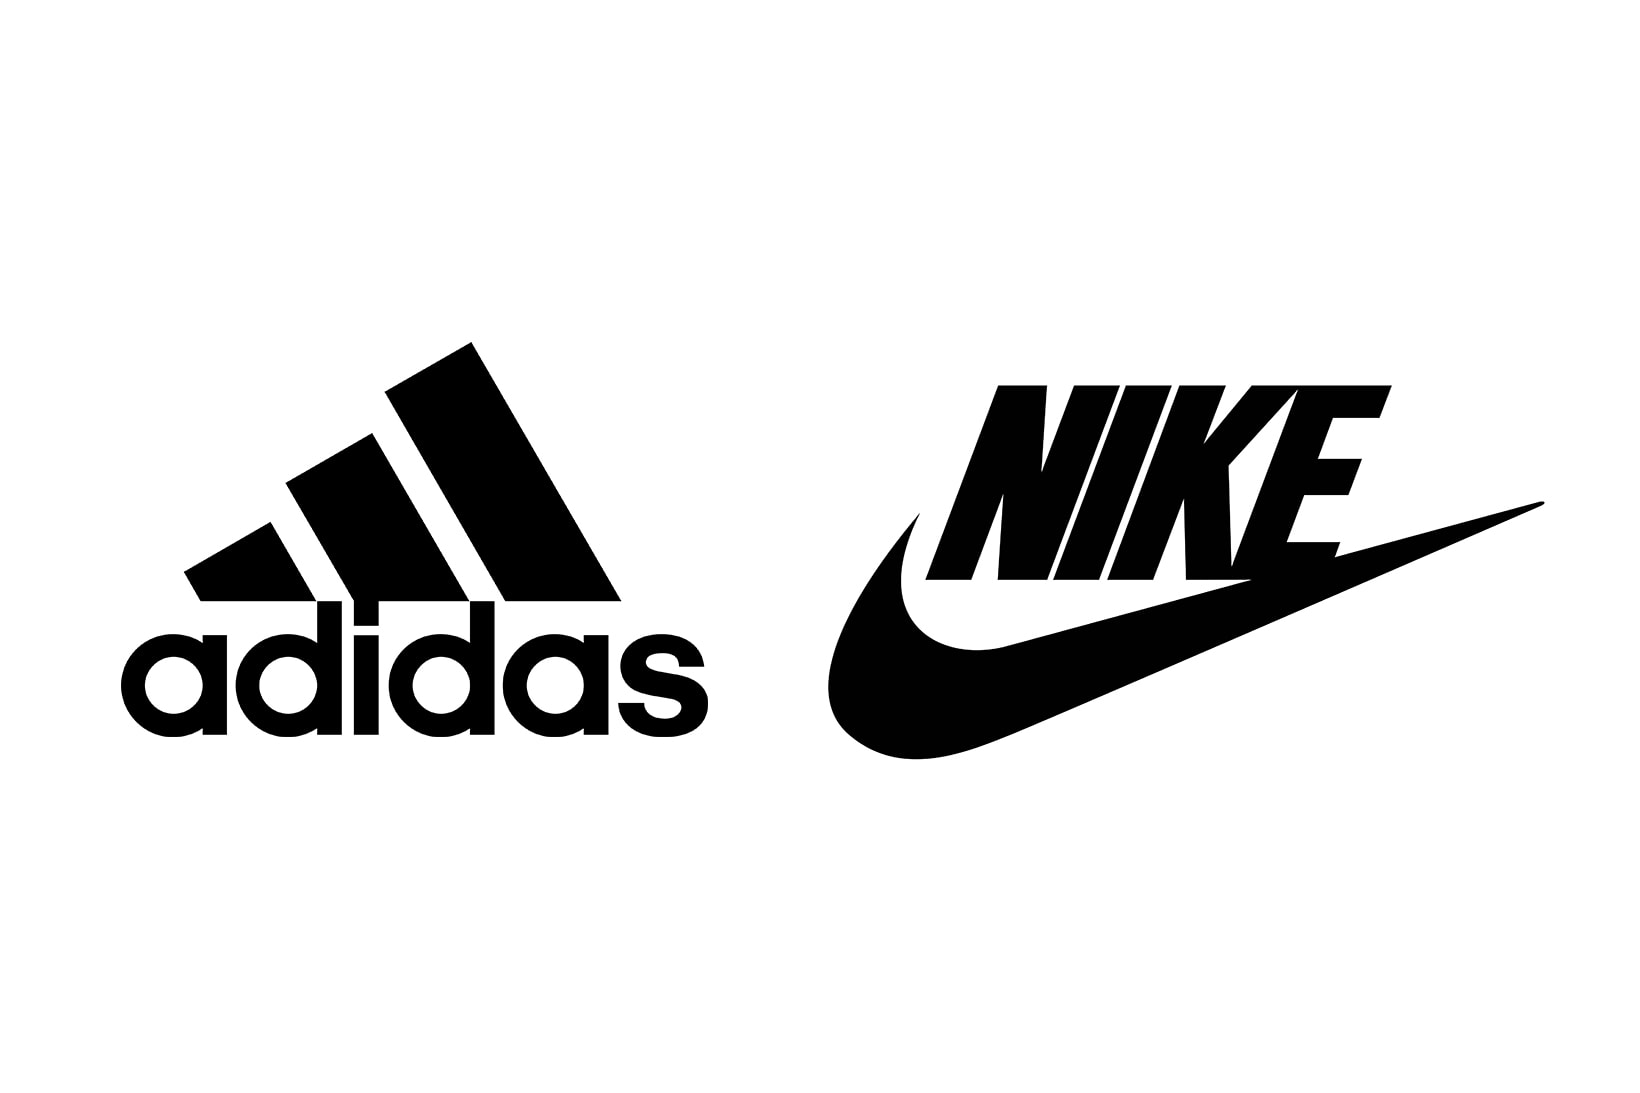 アディダスがナイキを特許権侵害で提訴 Adidas Files Copyright Infringement Lawsuit Against Nike